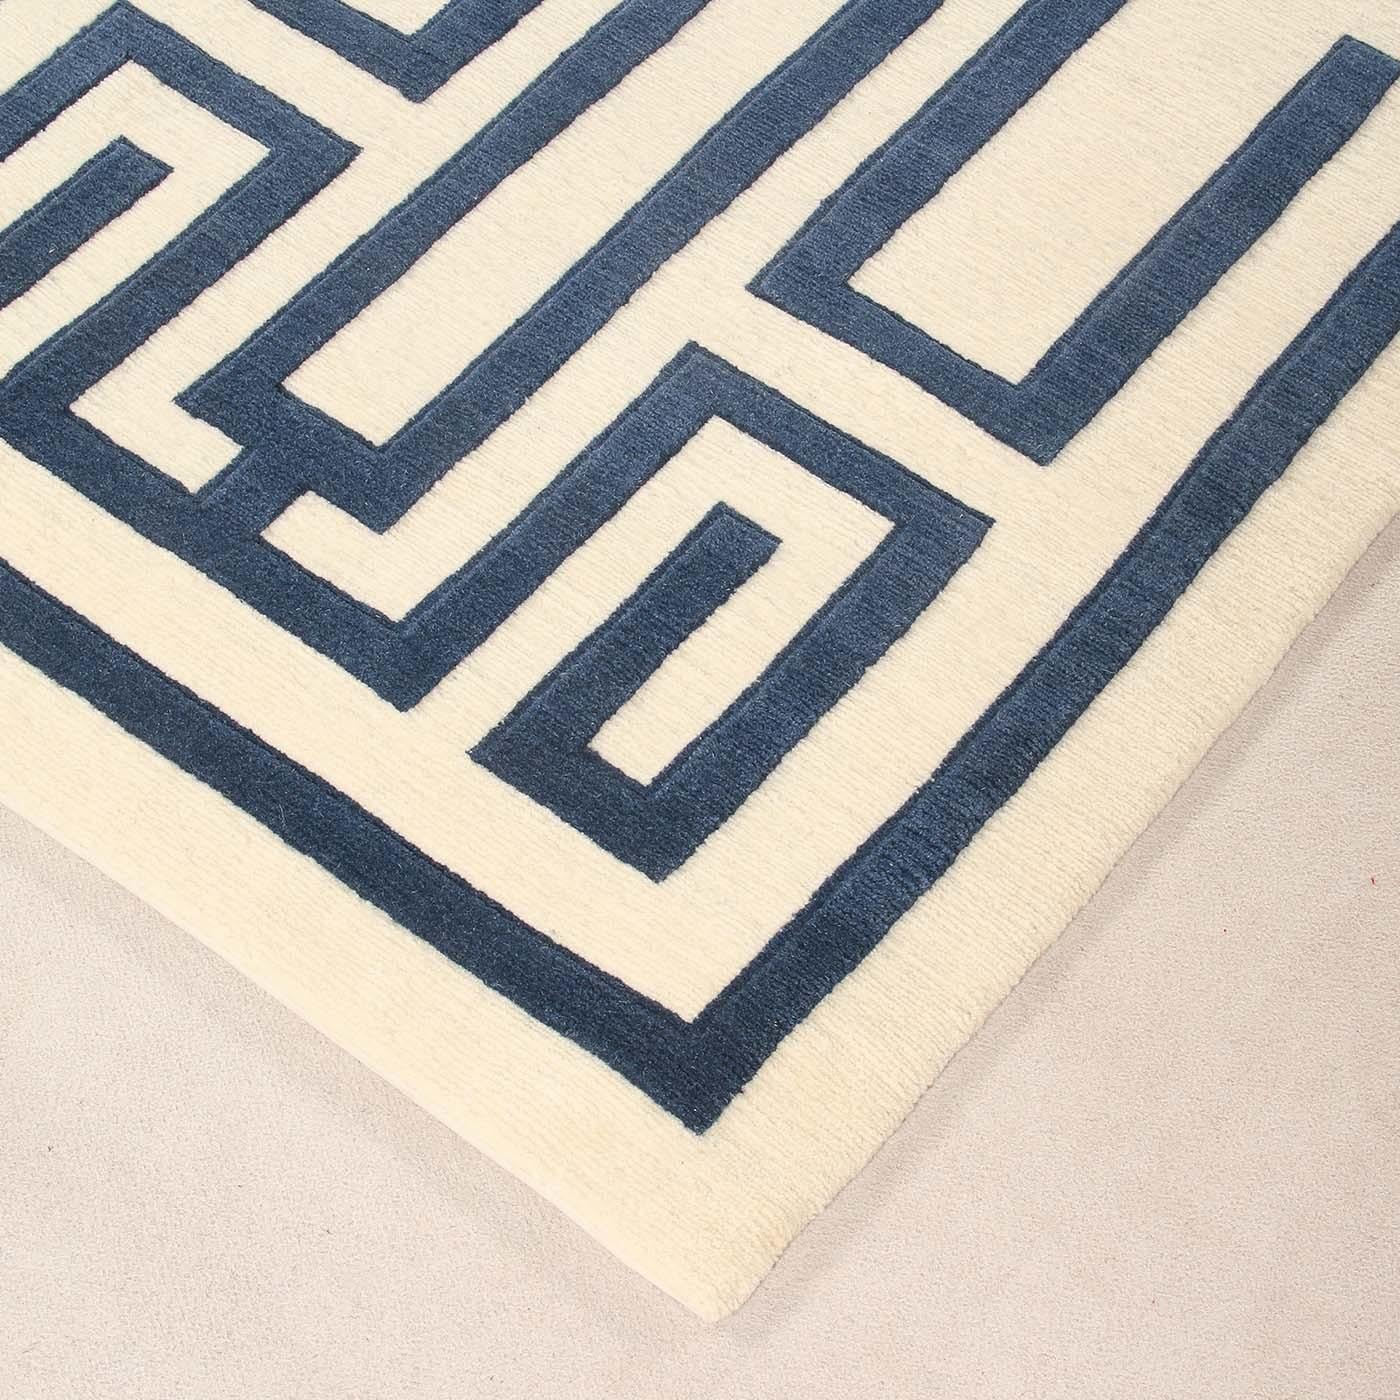 Die Symmetrie des Musters, die Kontraste zwischen den Hintergründen und die Zeichnung verleihen dem Labirinto-Teppich Tiefe. Ein faszinierendes dreidimensionales Muster, das ursprünglich von Gio Ponti entworfen wurde, um eine zeitgenössische, aber